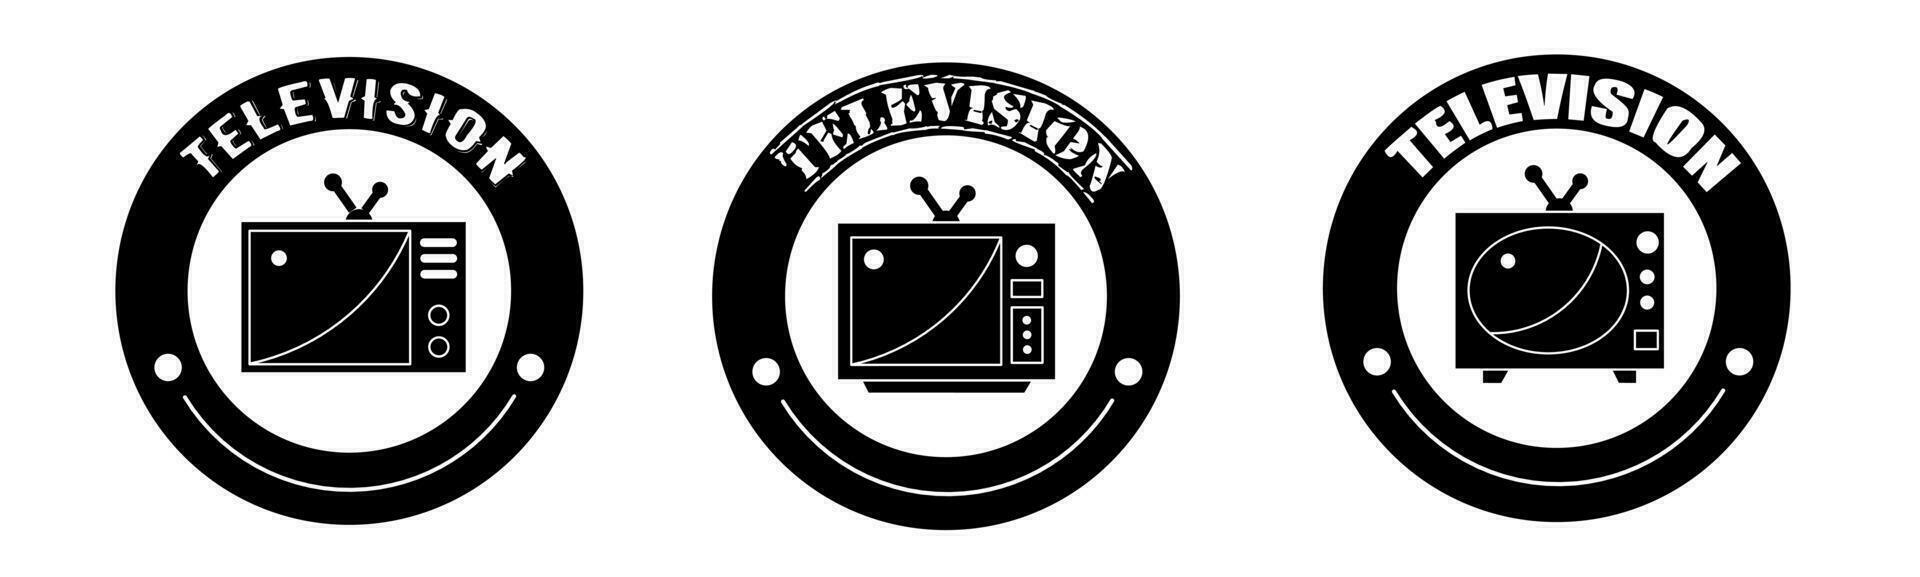 télévision produit vente icône vecteur illustration. conception pour magasin et vente bannière entreprise.